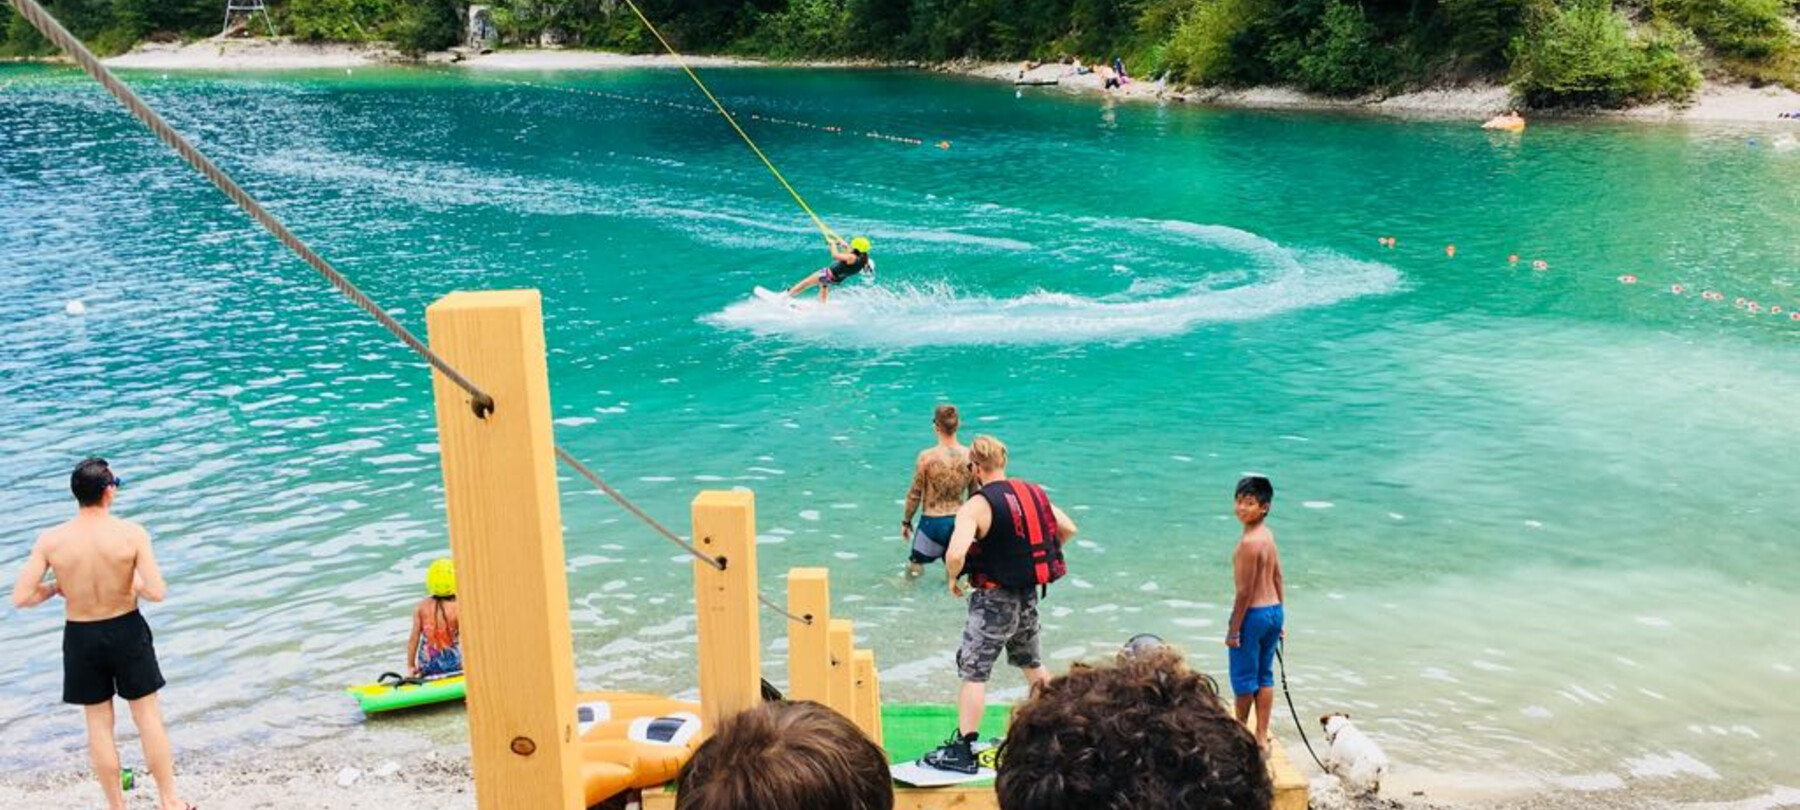 De meren van Trentino: het verhaal van het wakeboarden in Ledro